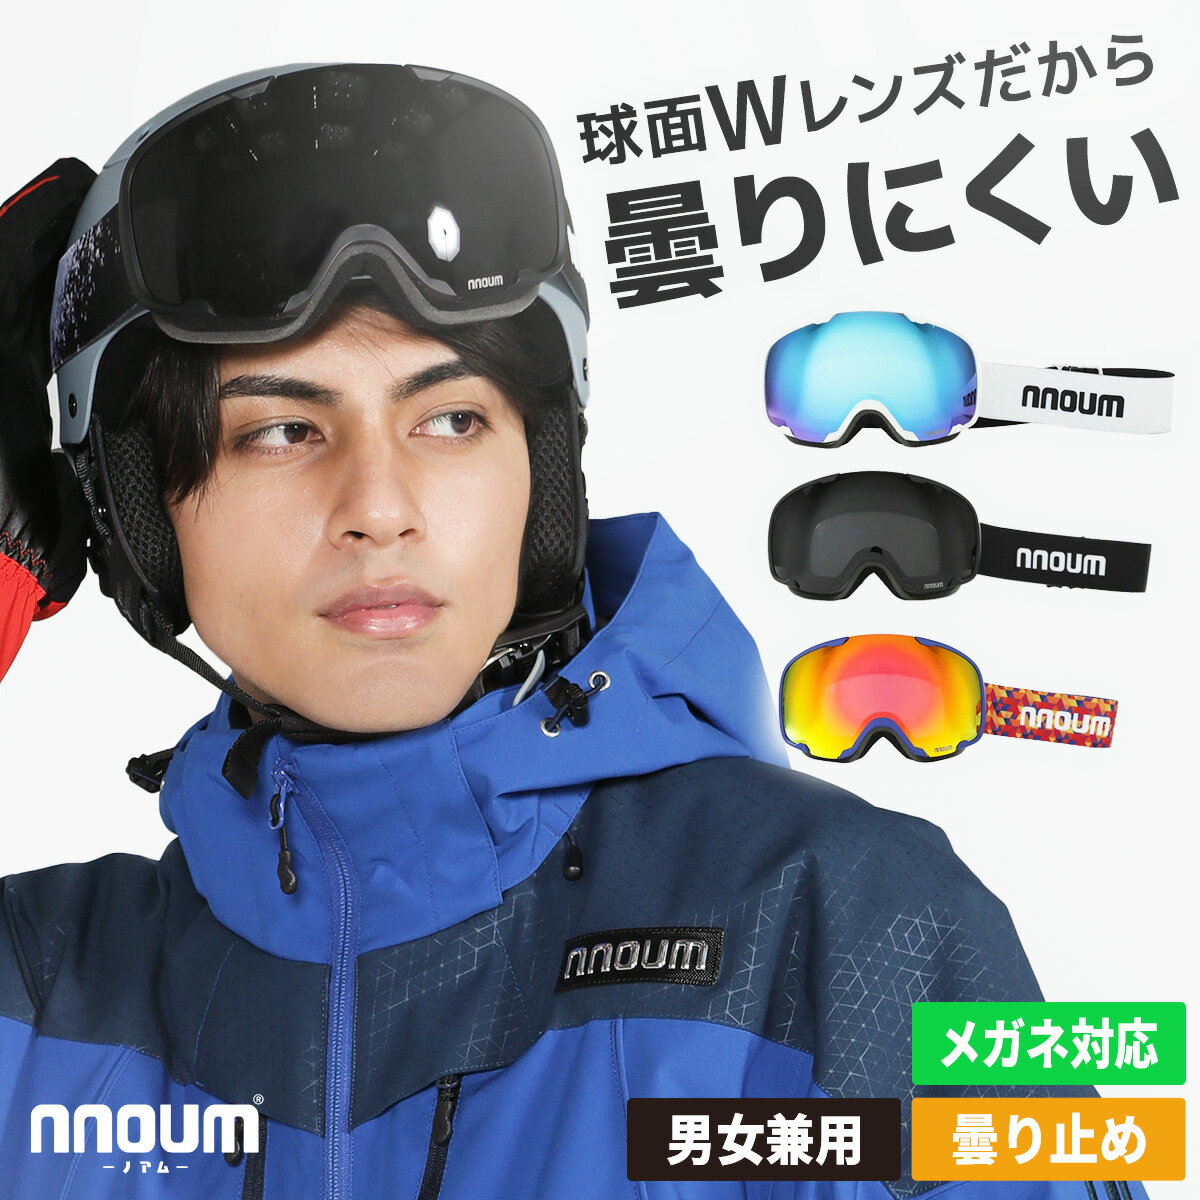 スキー ゴーグル スノーボード スノボー スノボ メンズ レディース メガネ 眼鏡対応 曇り止加工 NNOUM ノアム ヘルメットフィット uvカット 収納袋付き